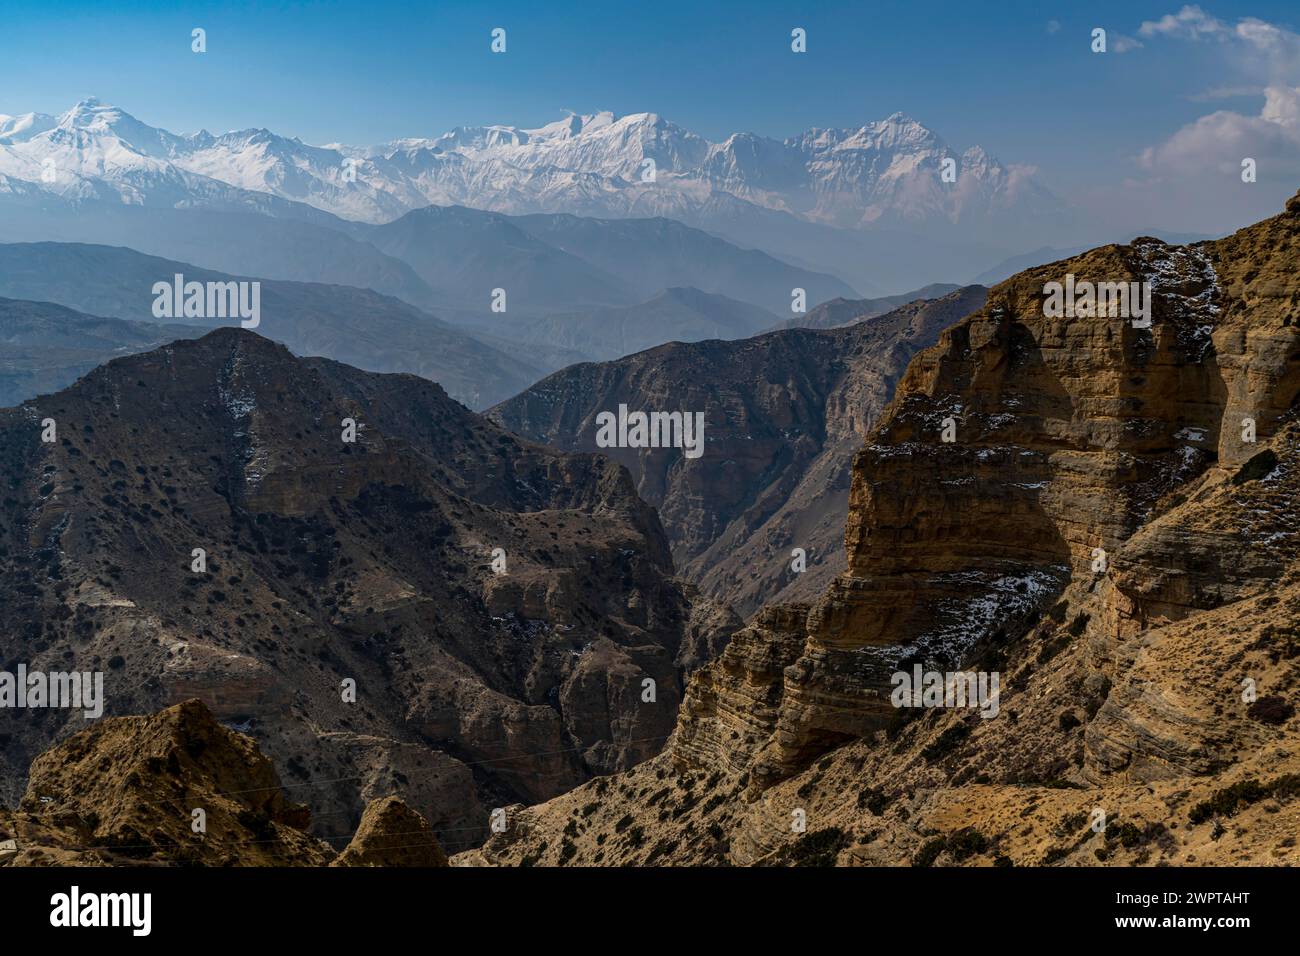 Paysage désertique avant la chaîne de montagnes Annapurna, Royaume de Mustang, Népal Banque D'Images